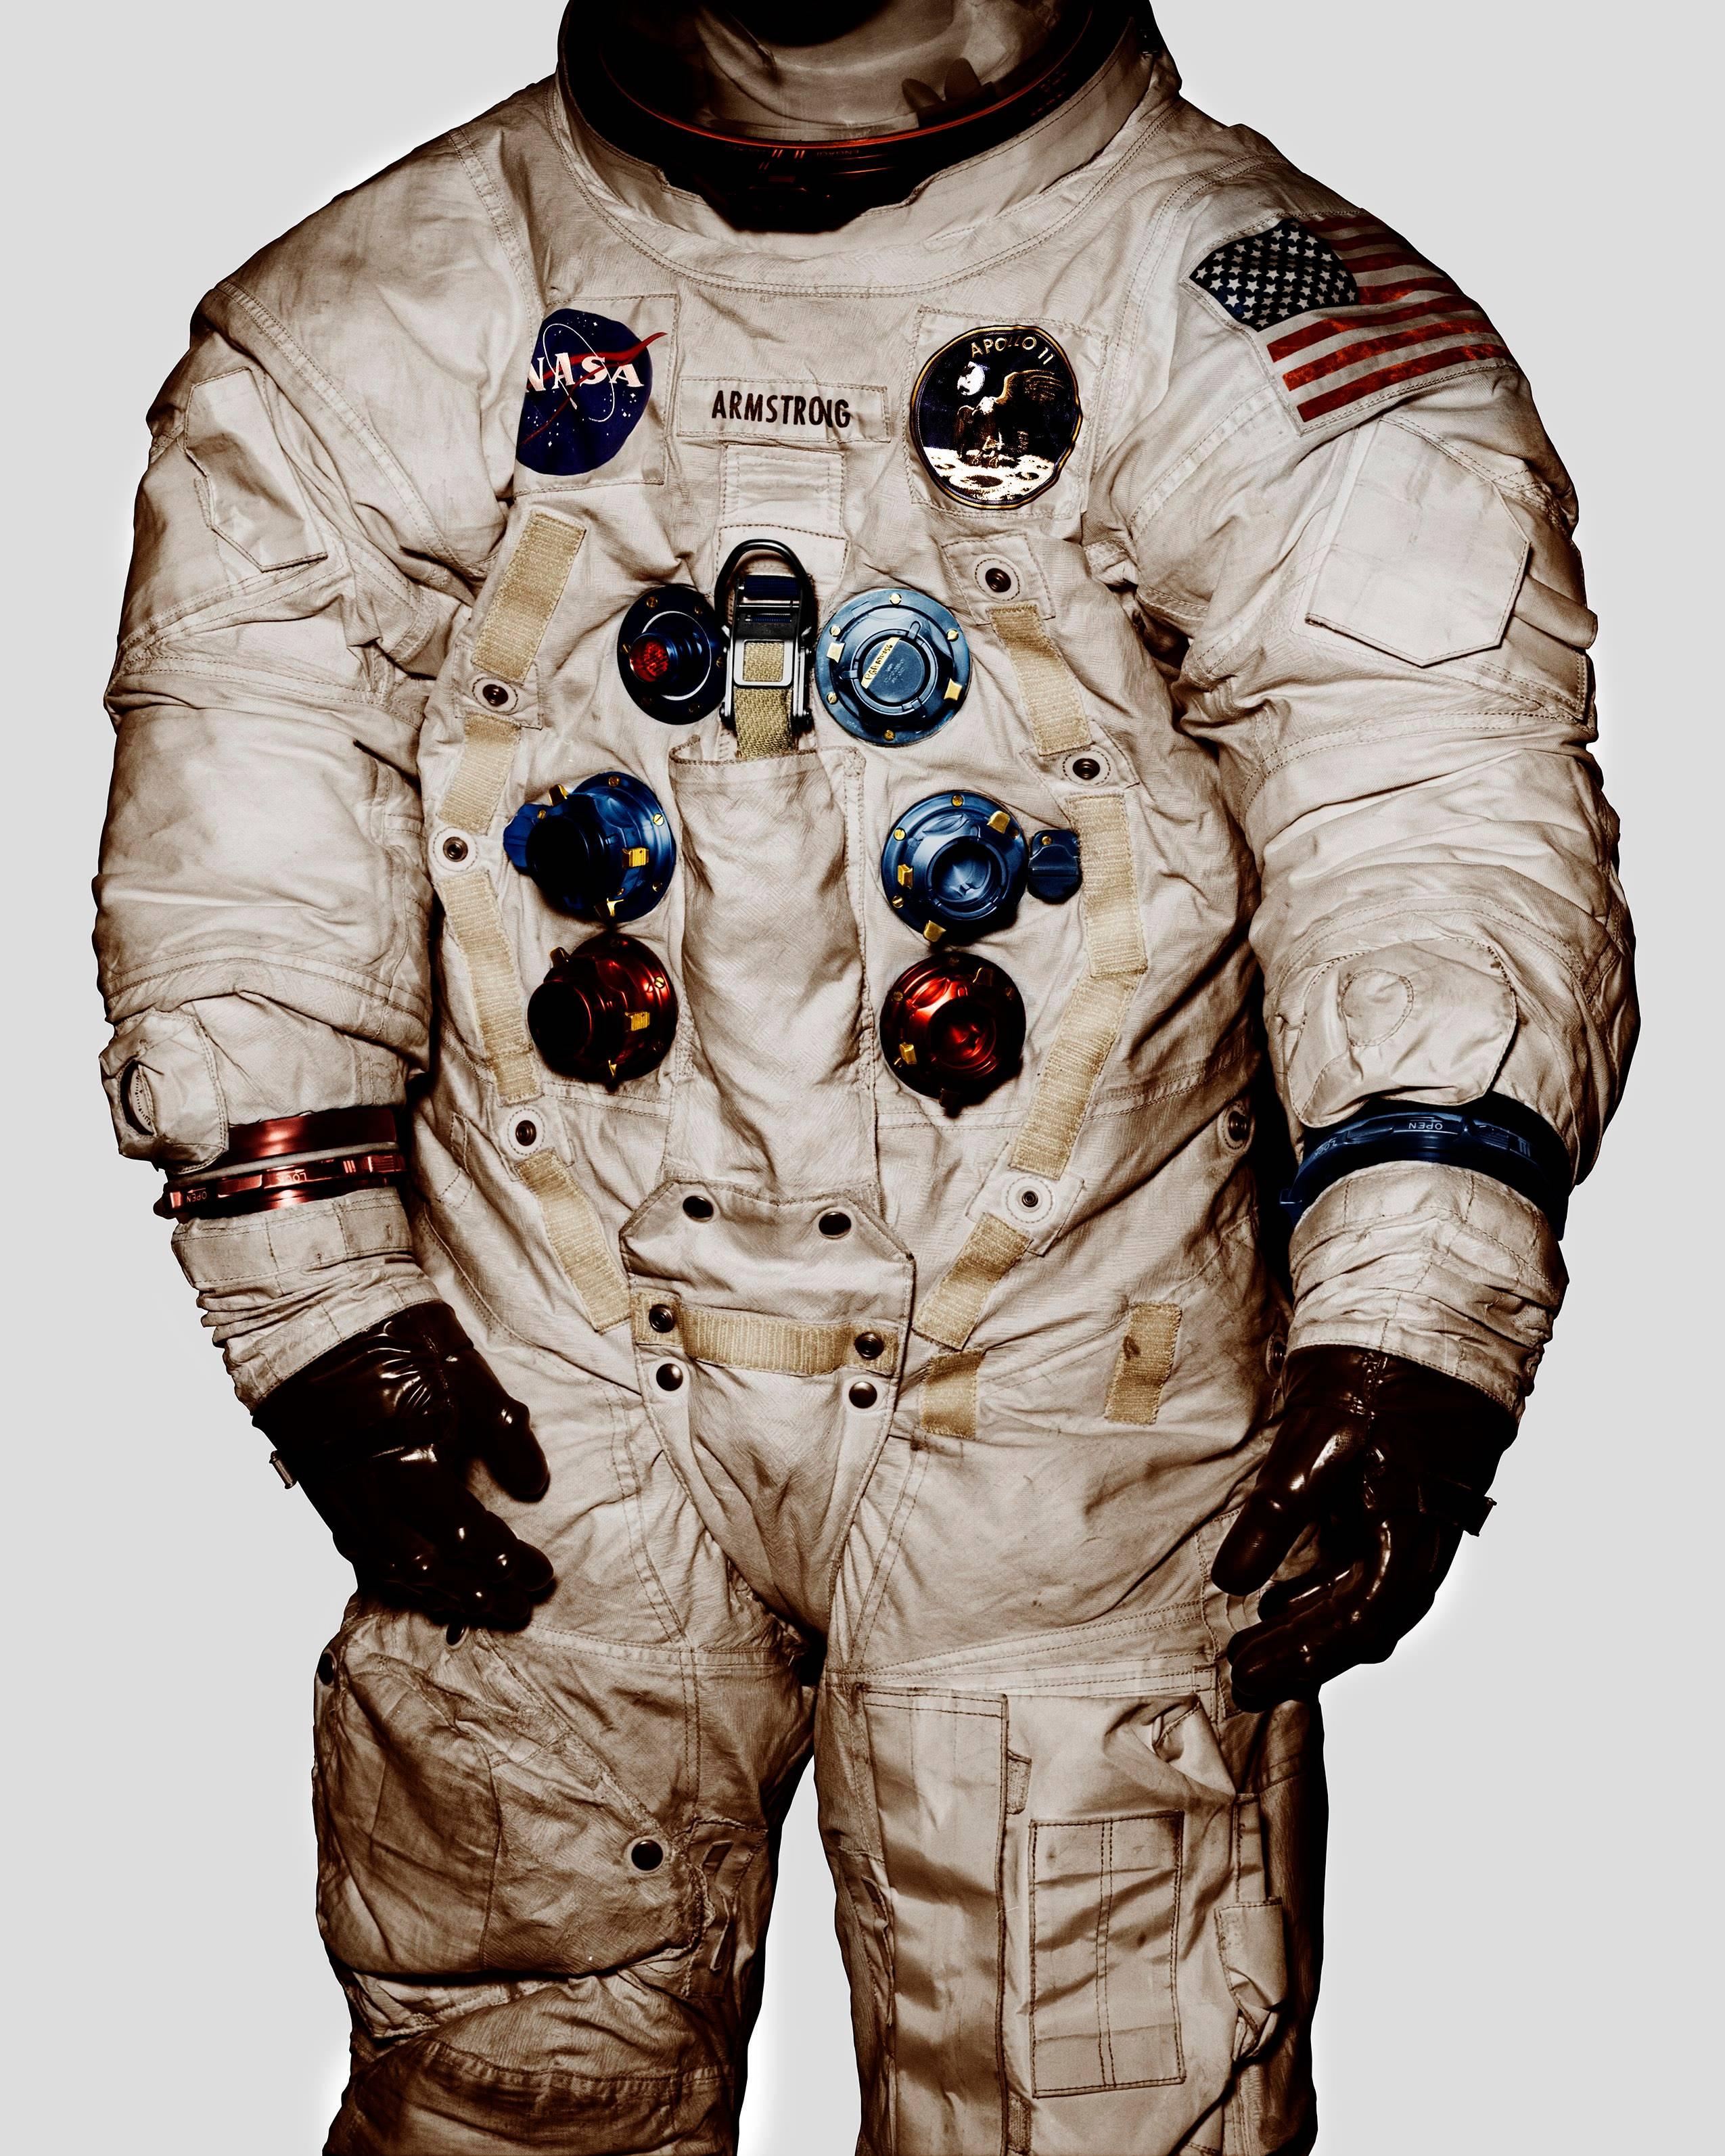 Albert Watson Still-Life Photograph - Armstrong’s Lunar Suit, Air & Space Museum, Washington D.C, 1990, Fine Art Print